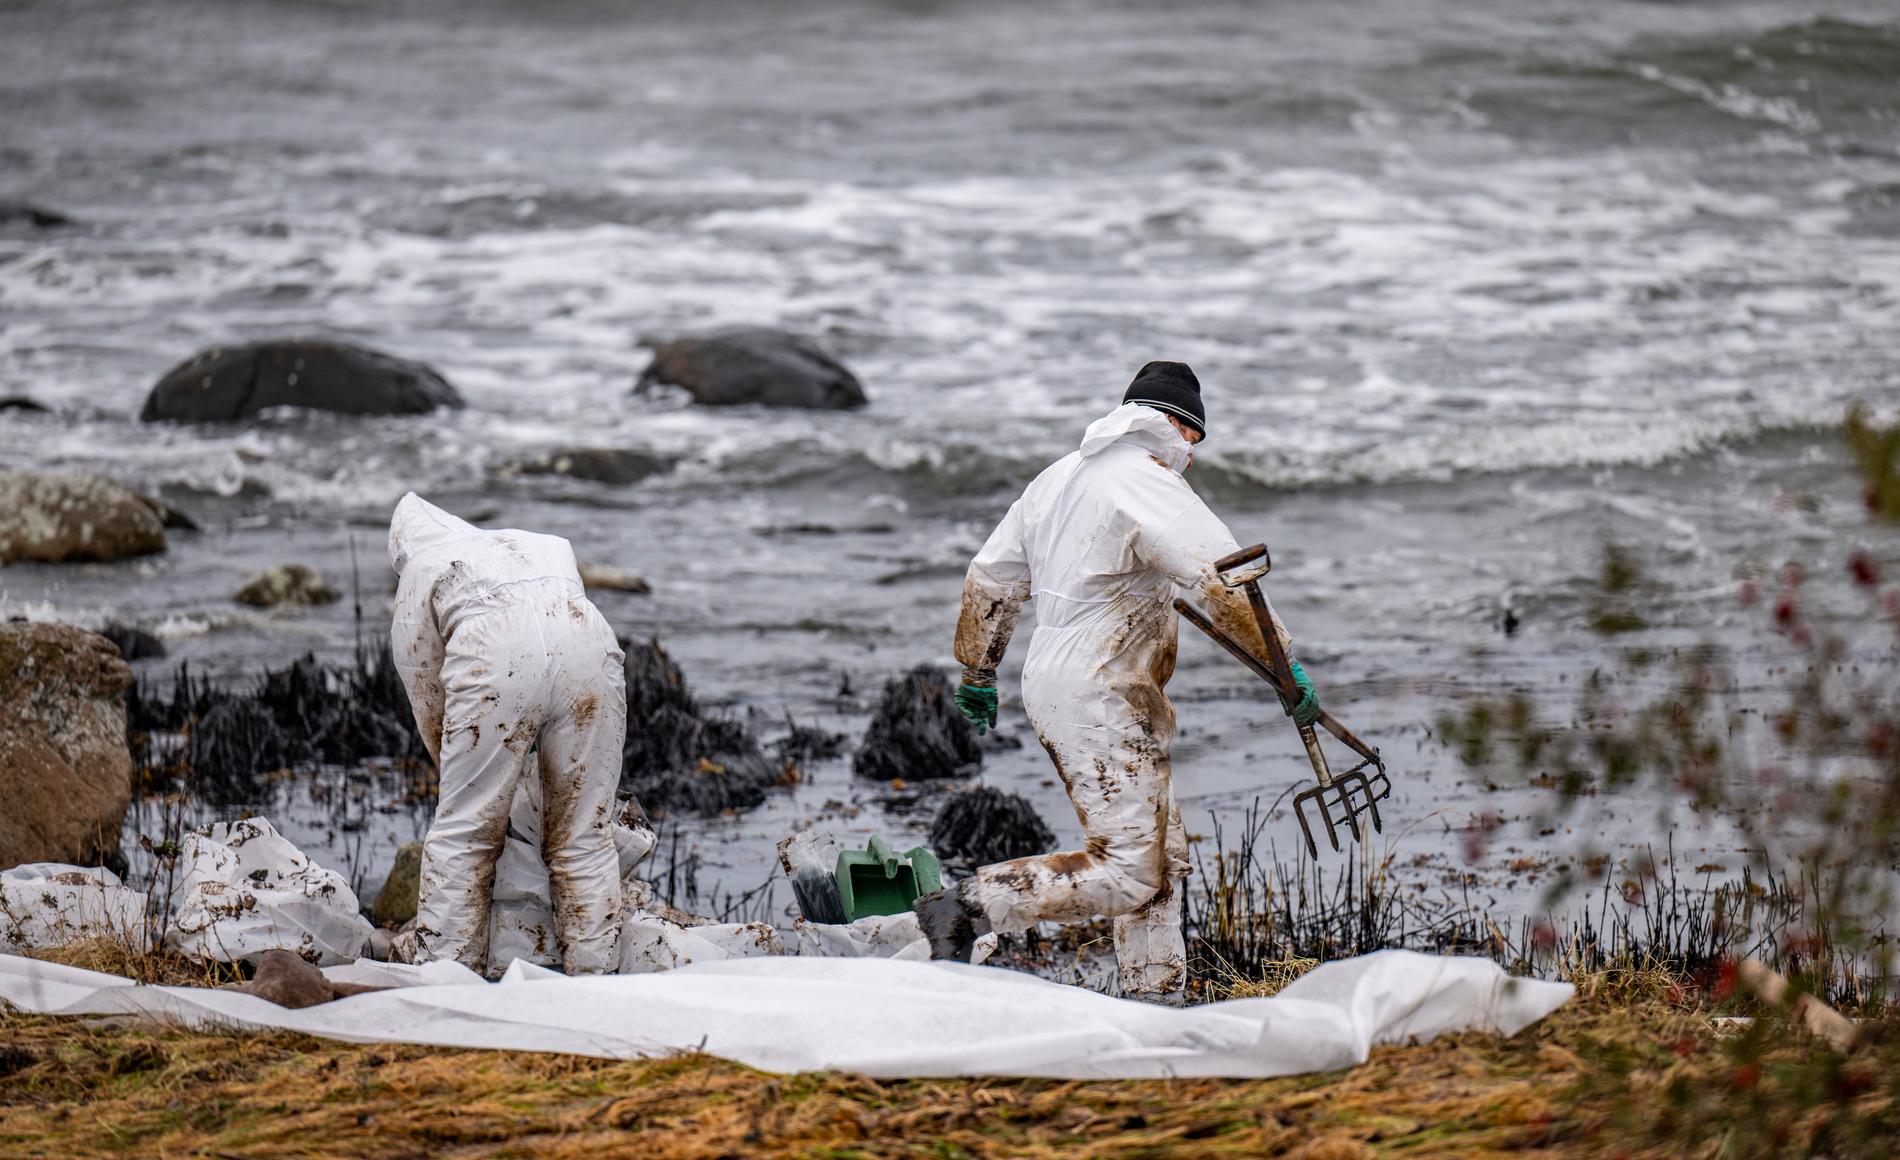 Personal från Kustbevakningen och Sölvesborgs kommun arbetar med sanering efter oljeläckaget från passagerarfartyget Marco Polo vid naturreservatet Spraglehall.